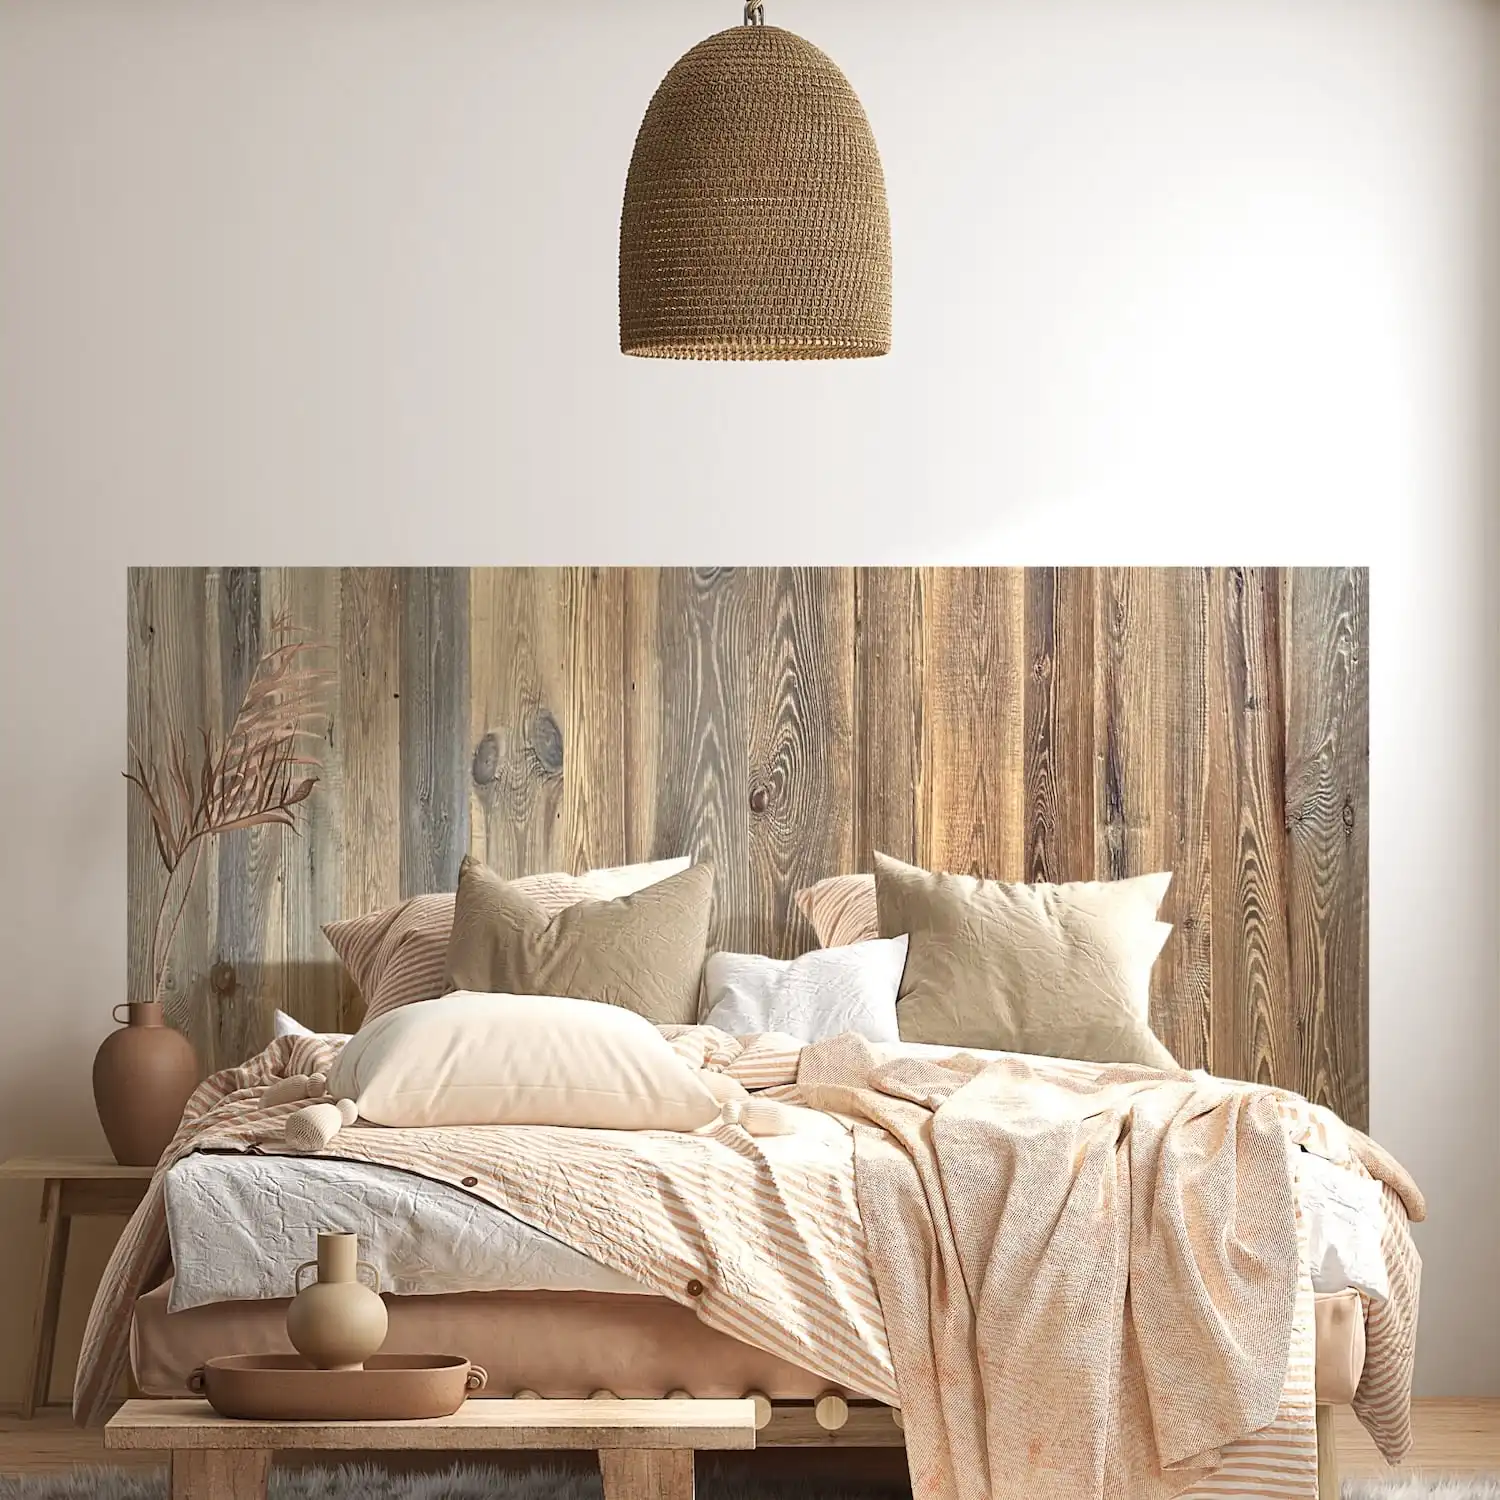  Une chambre confortable avec une tête de lit en bois rustique, une literie aux tons neutres et une suspension tressée. 